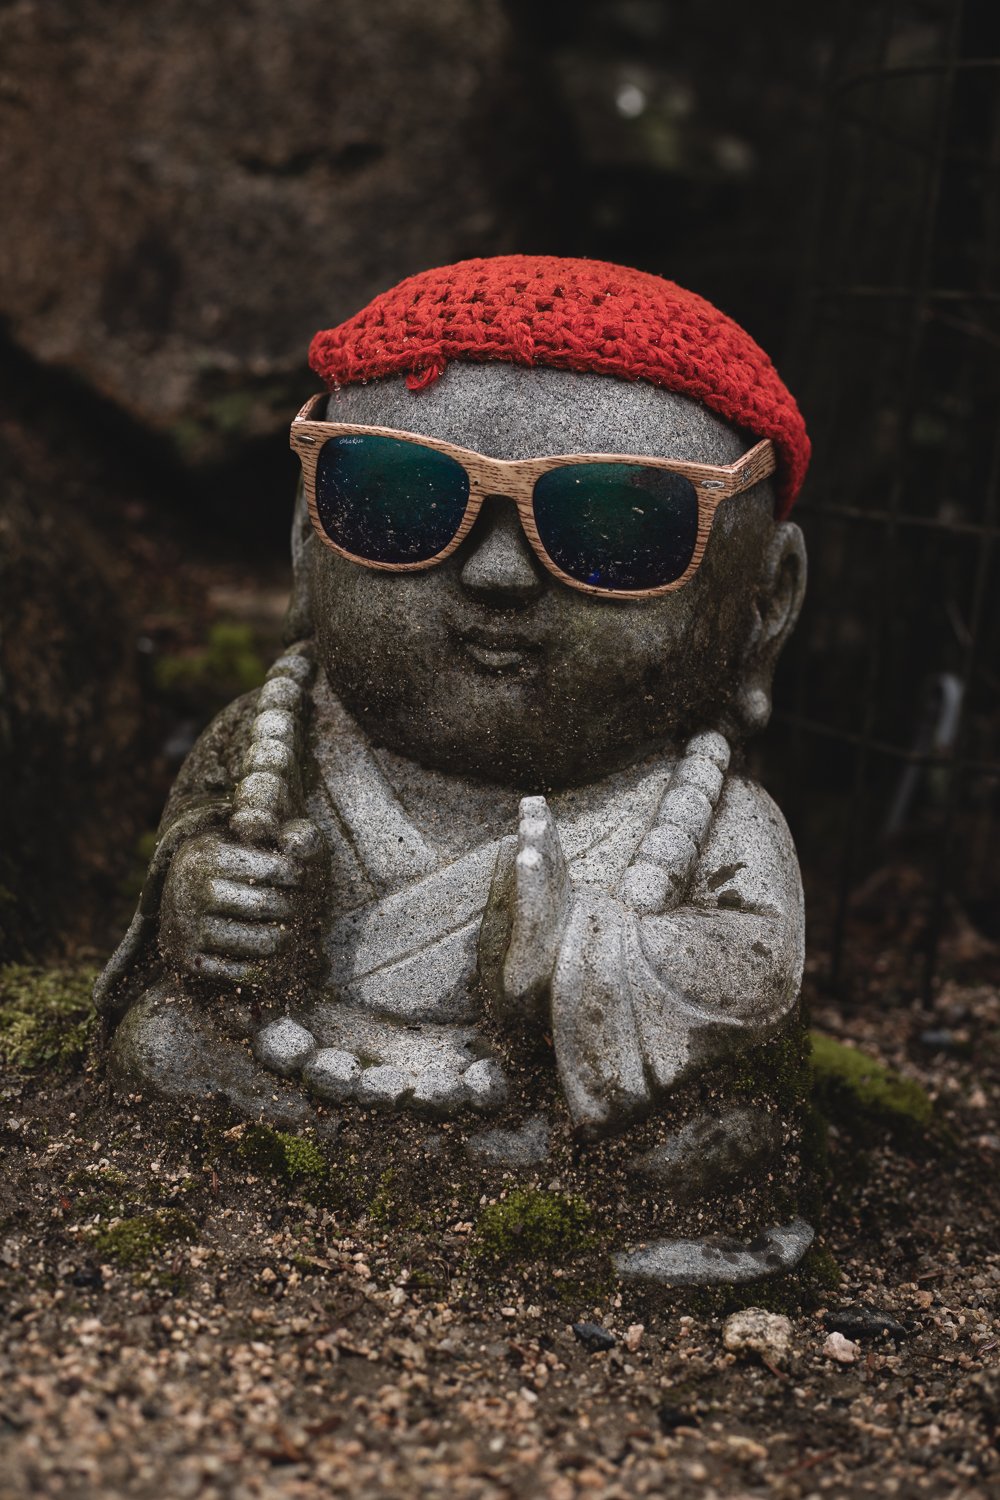 Au statuette aux allures de moine en pierre. Elle porte un bonnet rouge et des lunettes de soleil